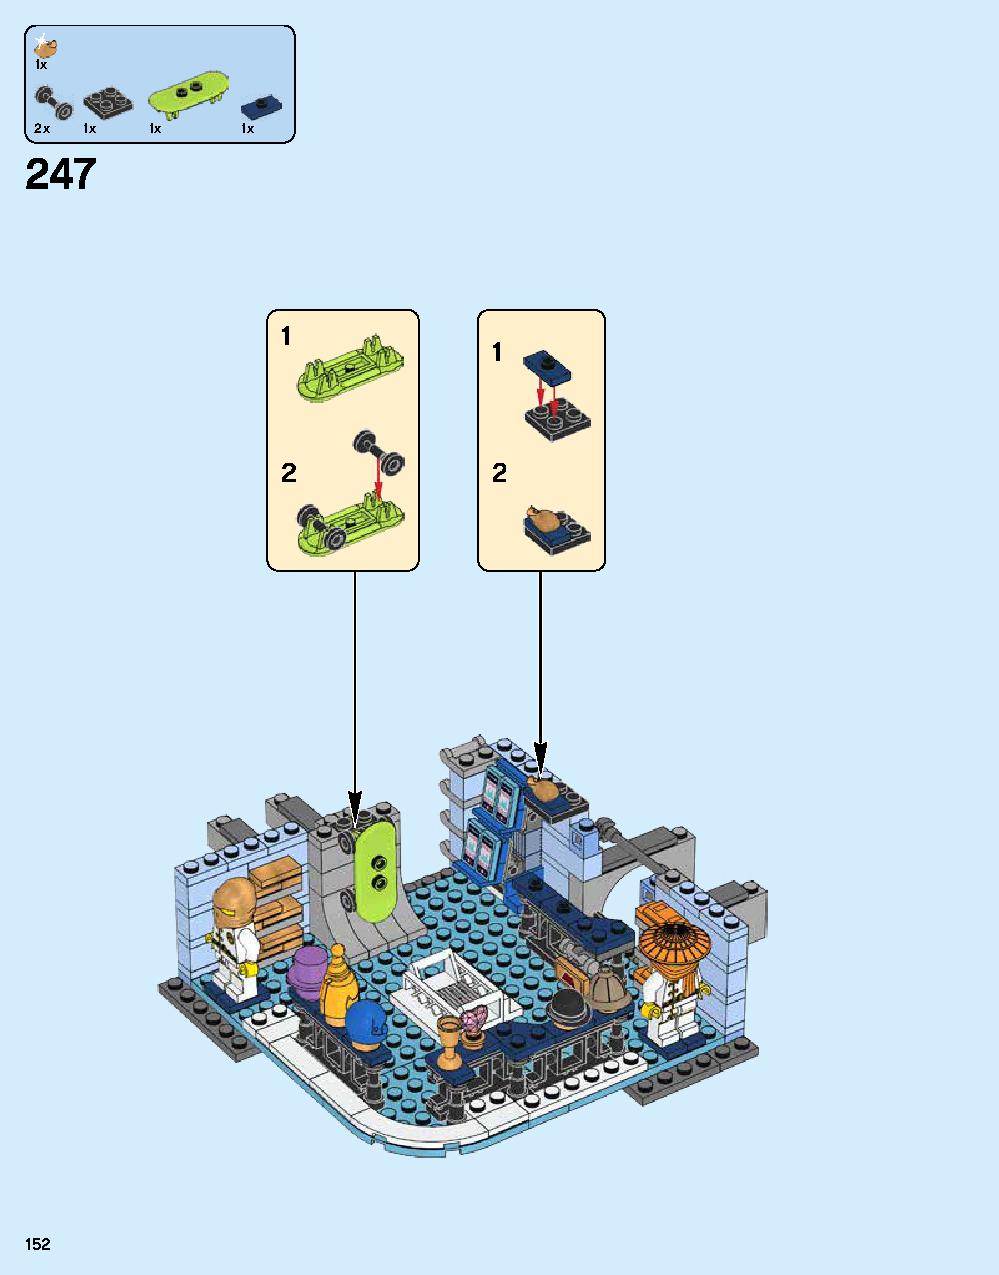 ニンジャゴー シティ 70620 レゴの商品情報 レゴの説明書・組立方法 152 page